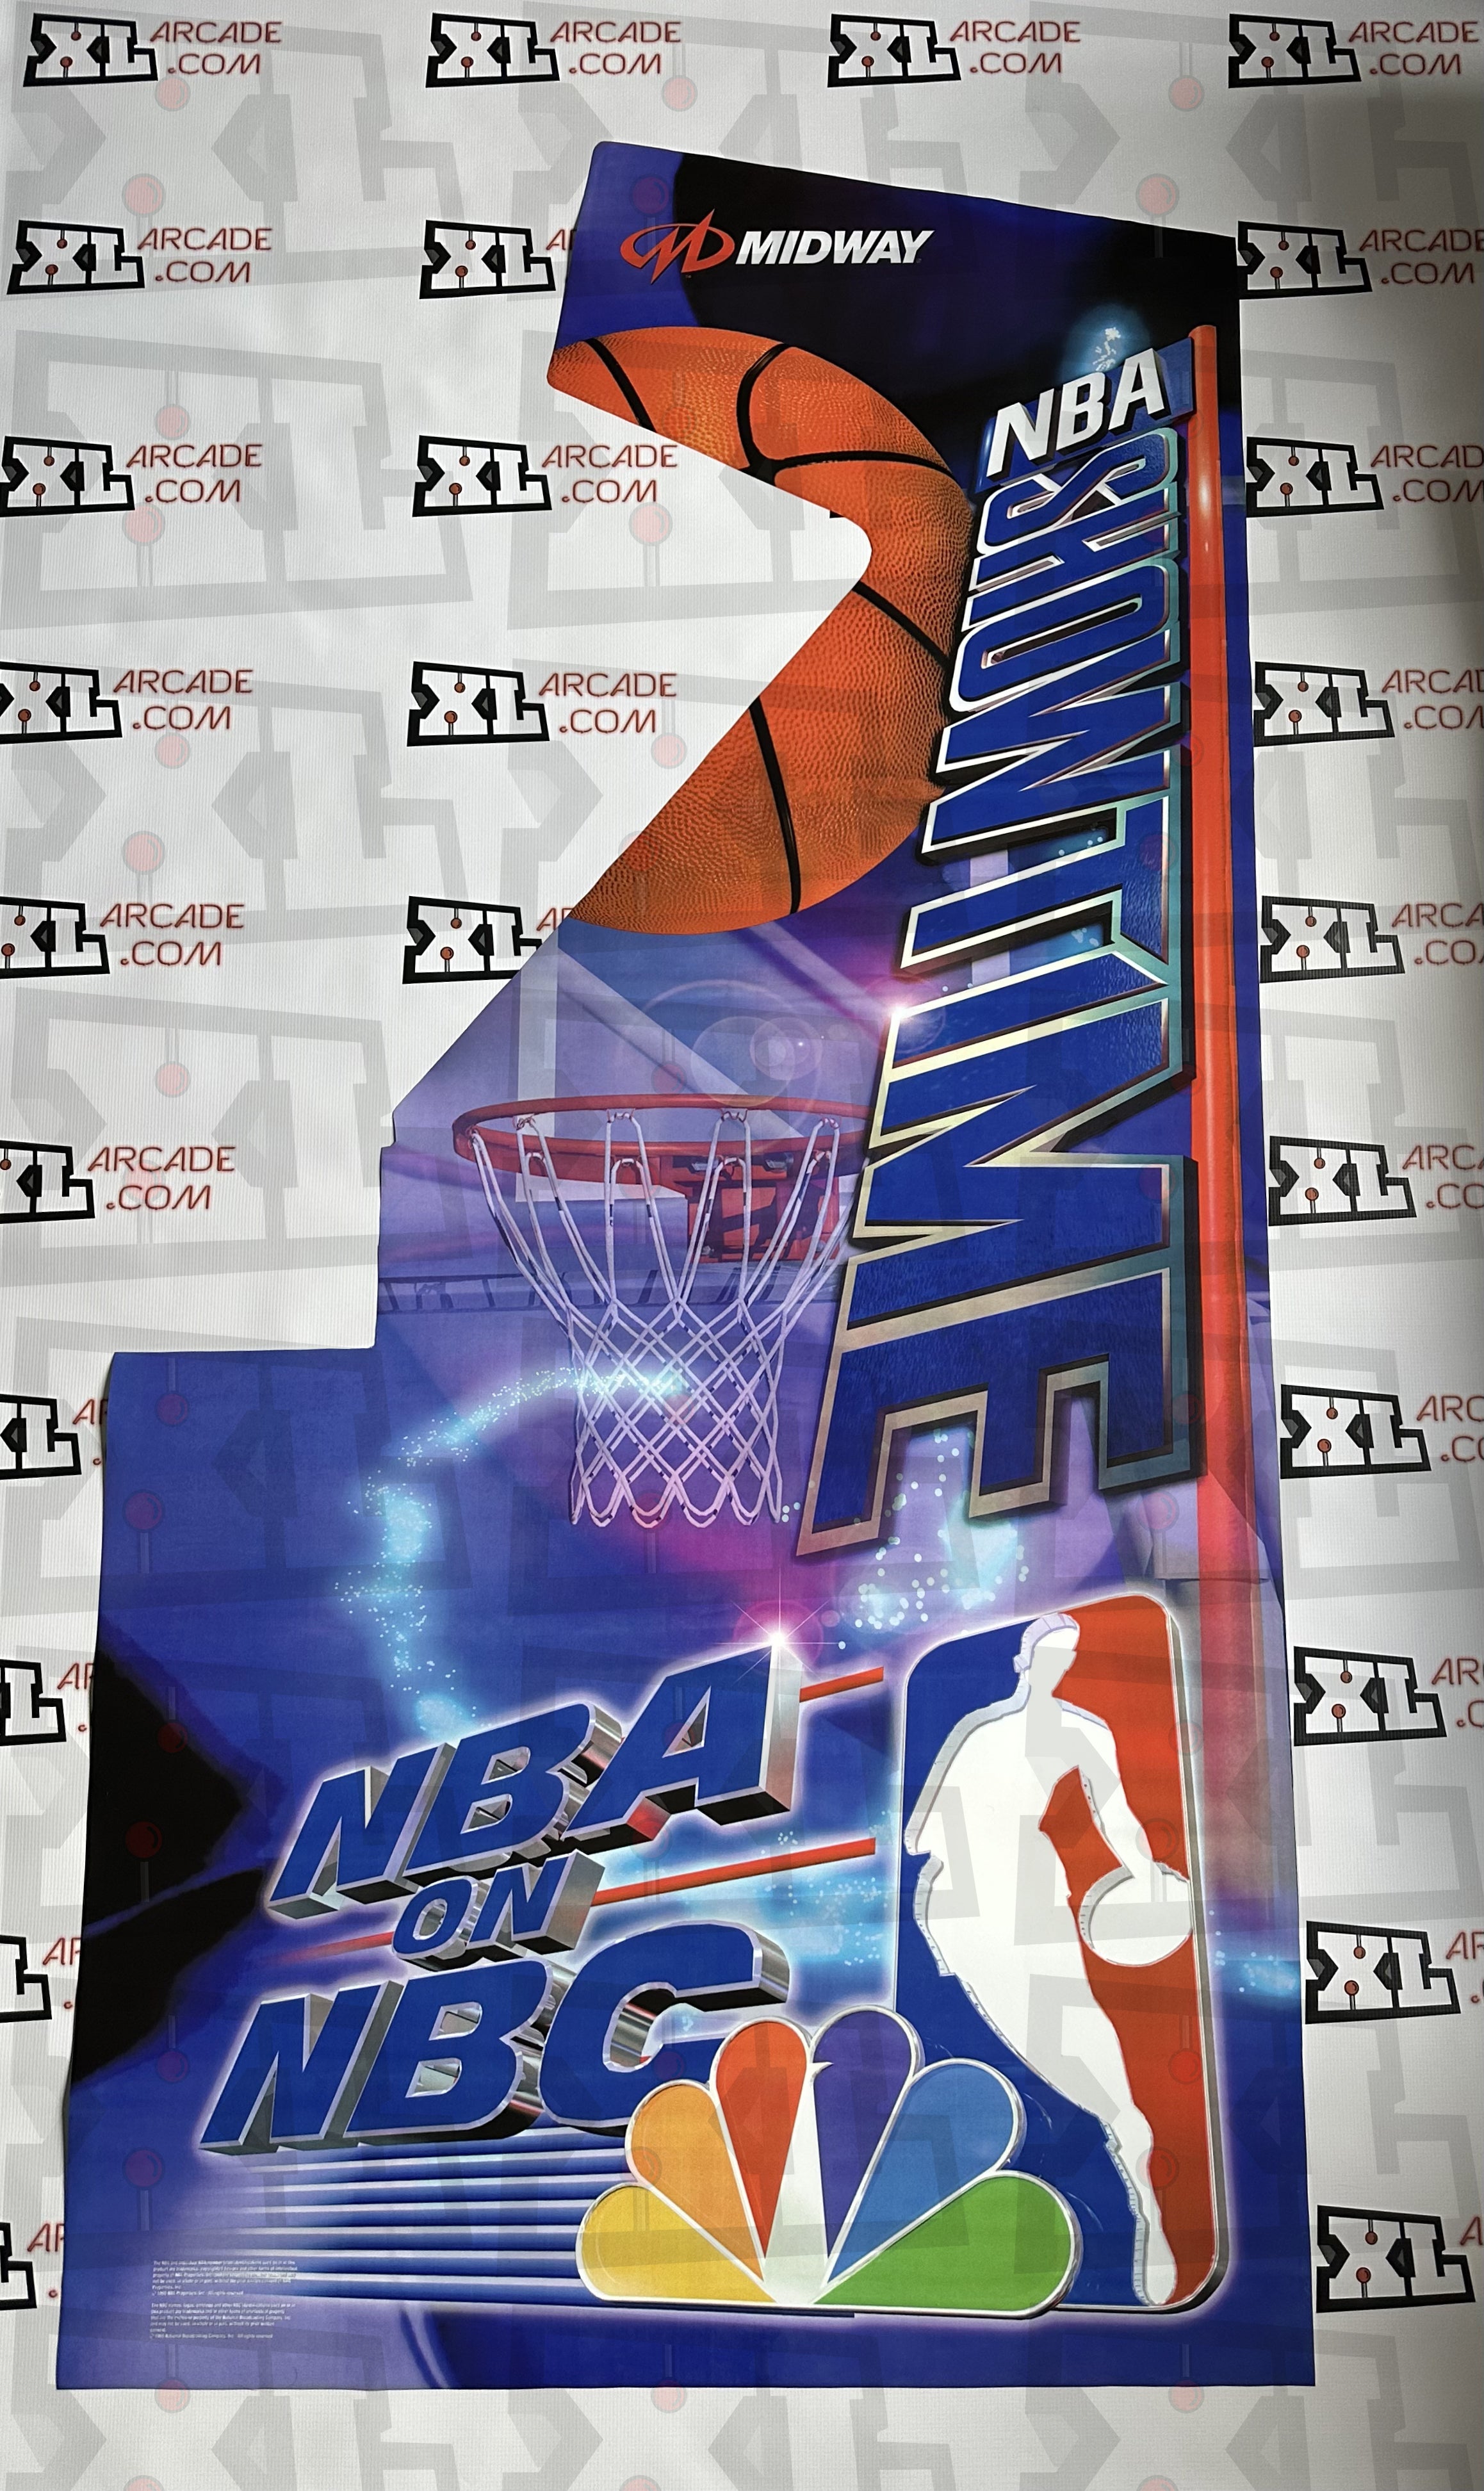 NBA Showtime NBA on NBC Complete Art Kit